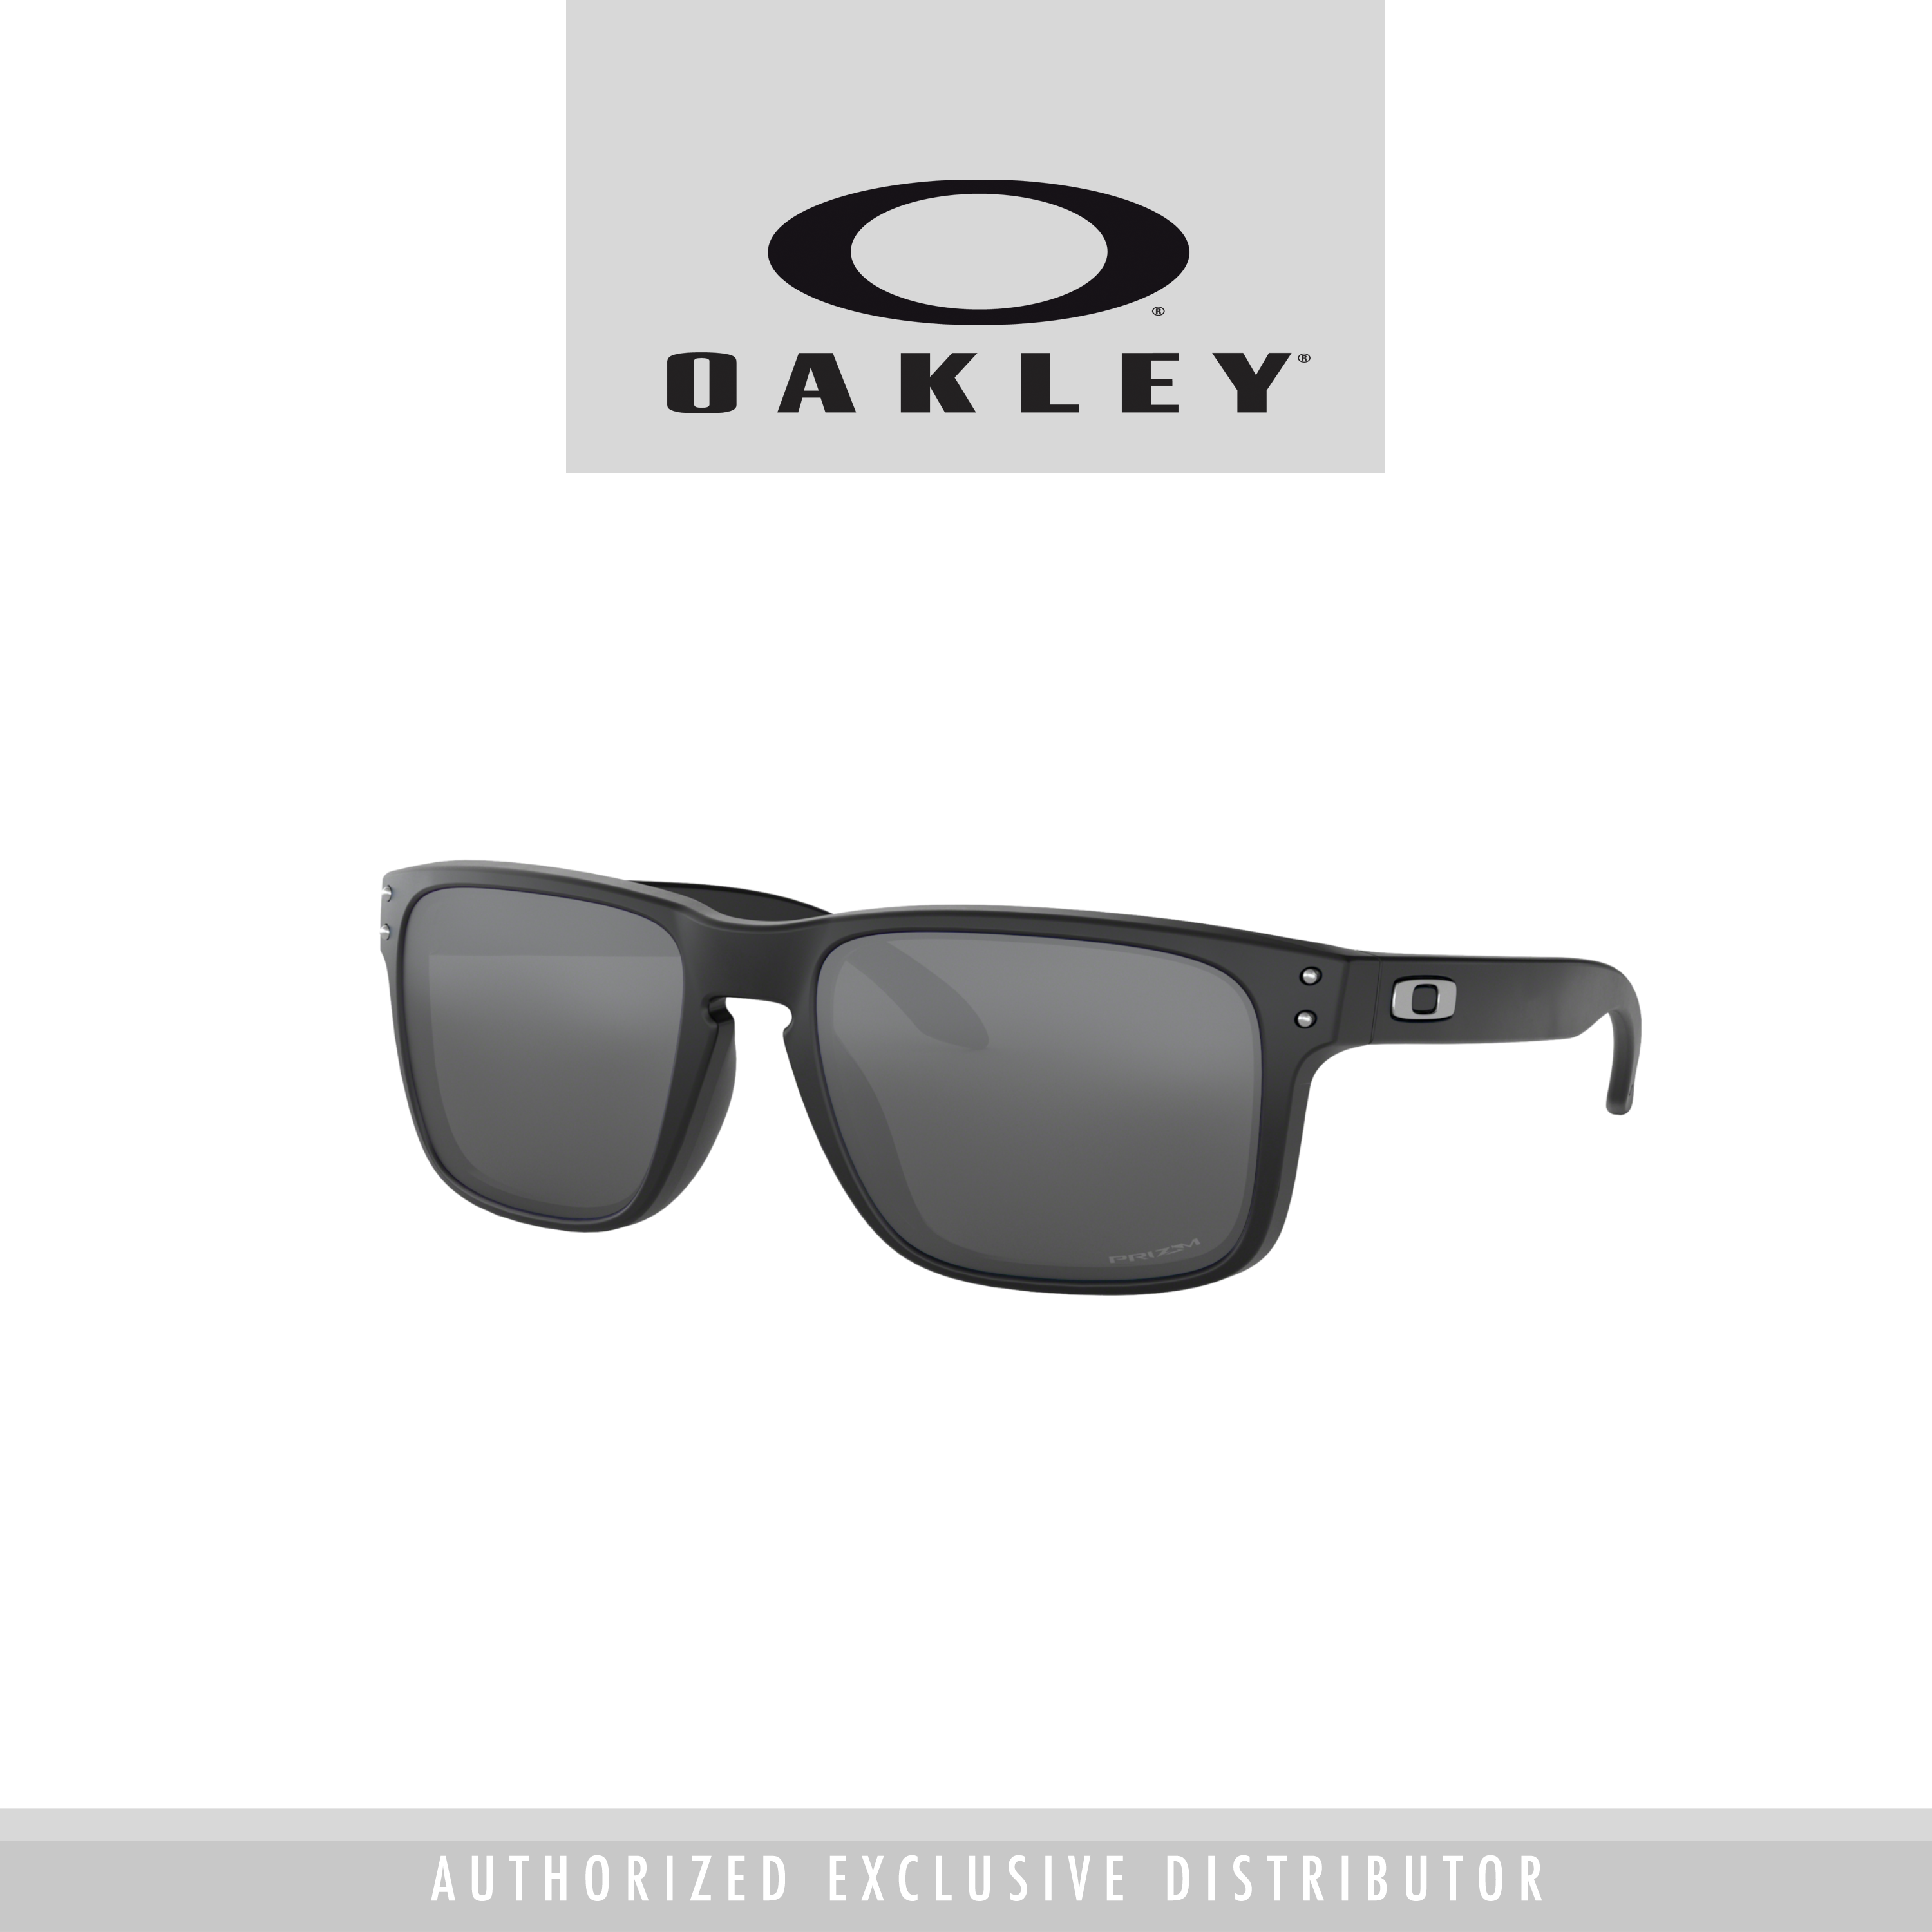 Buy Oakley Men Sunglasses Online 